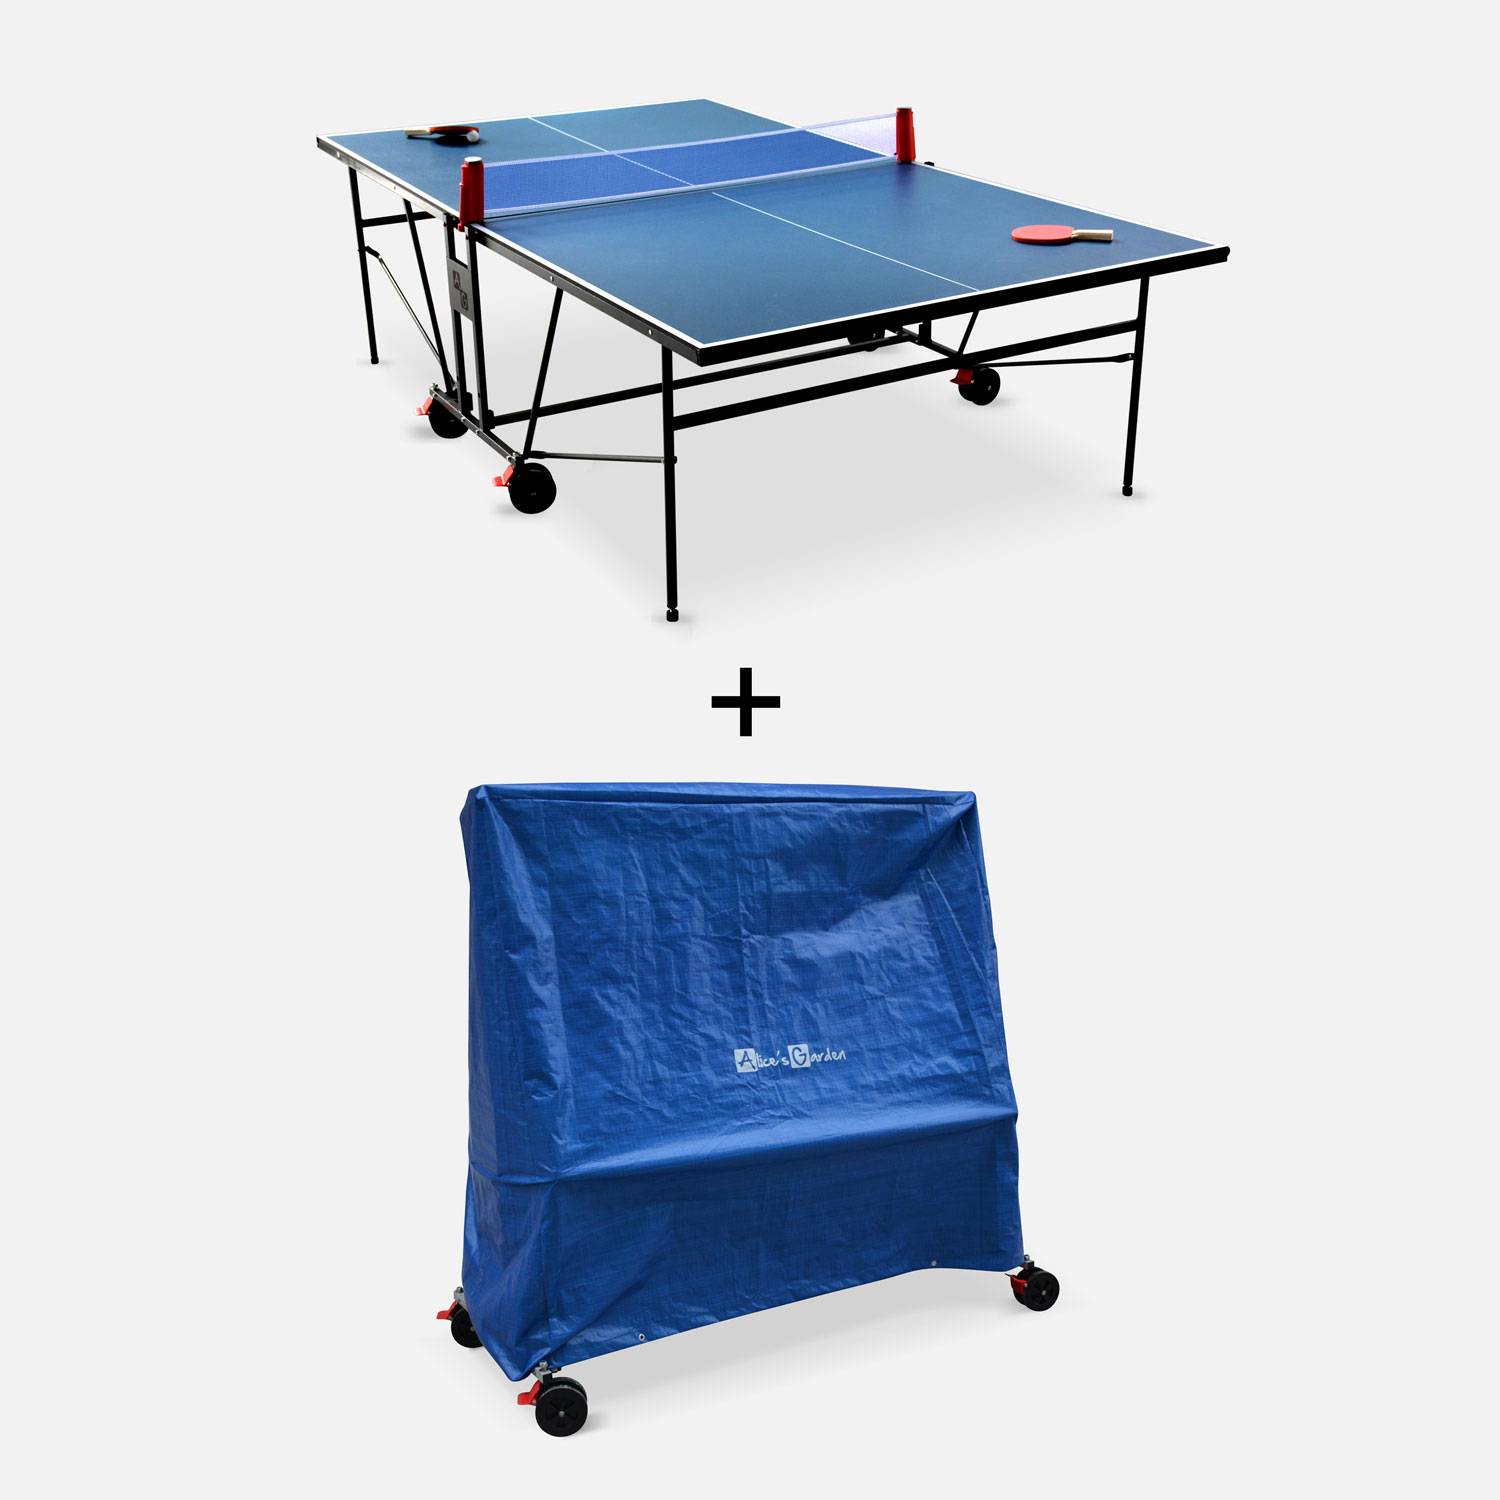 INDOOR tafeltennistafel blauw met beschermhoes, opvouwbare tafel met 2 batjes et 3 balletjes, voor binnengebruik, sport tafeltennis Photo1